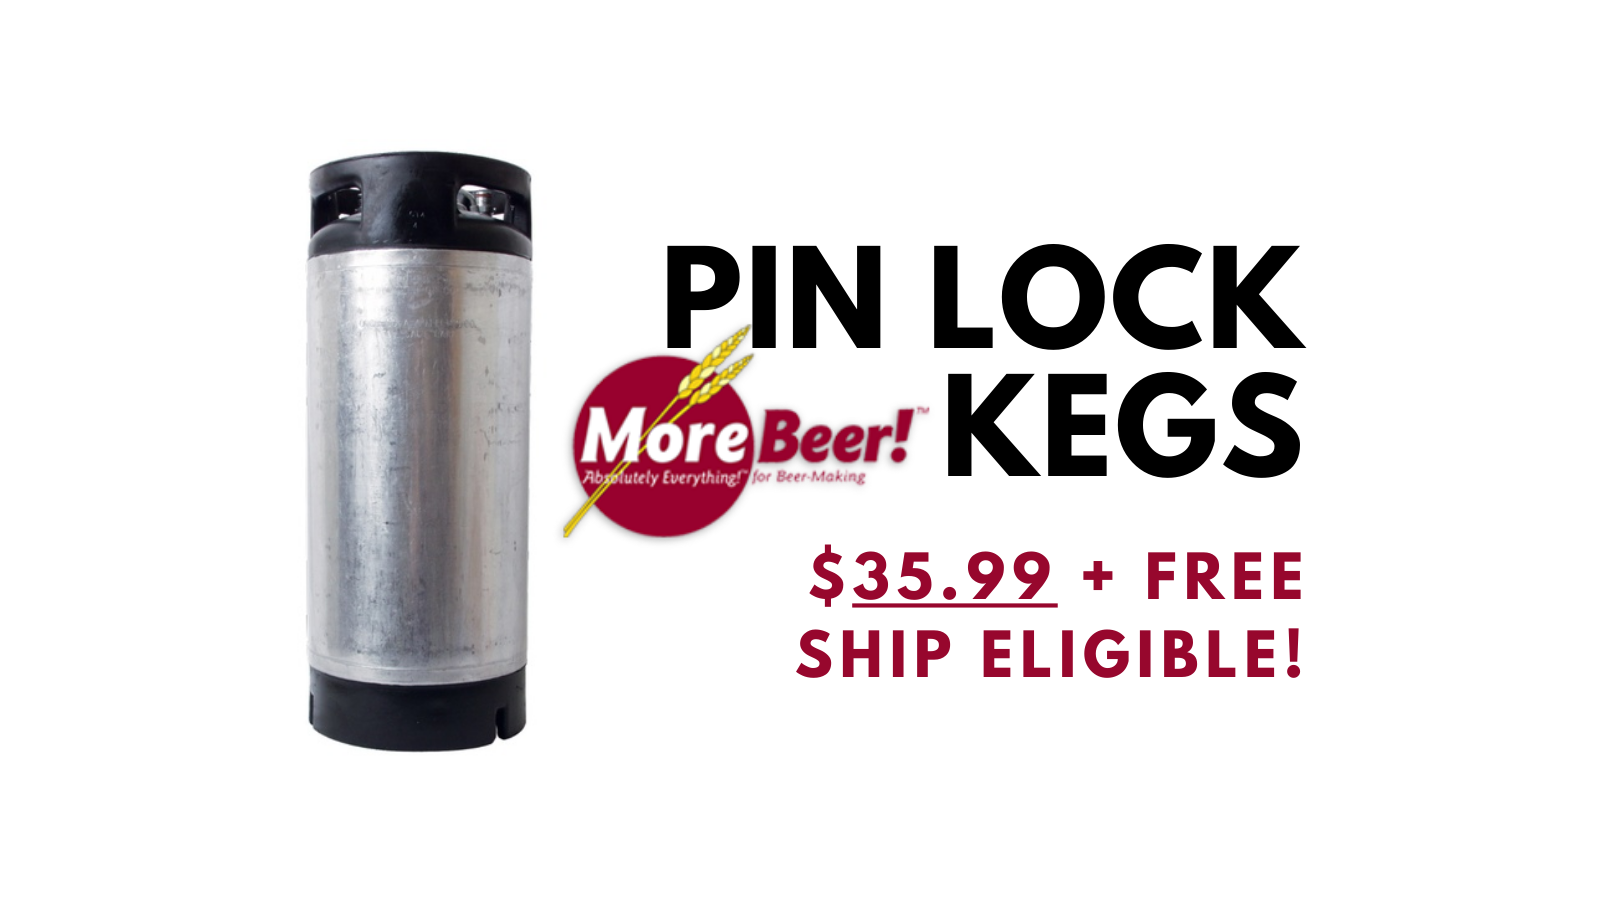 morebeer pin lock keg432